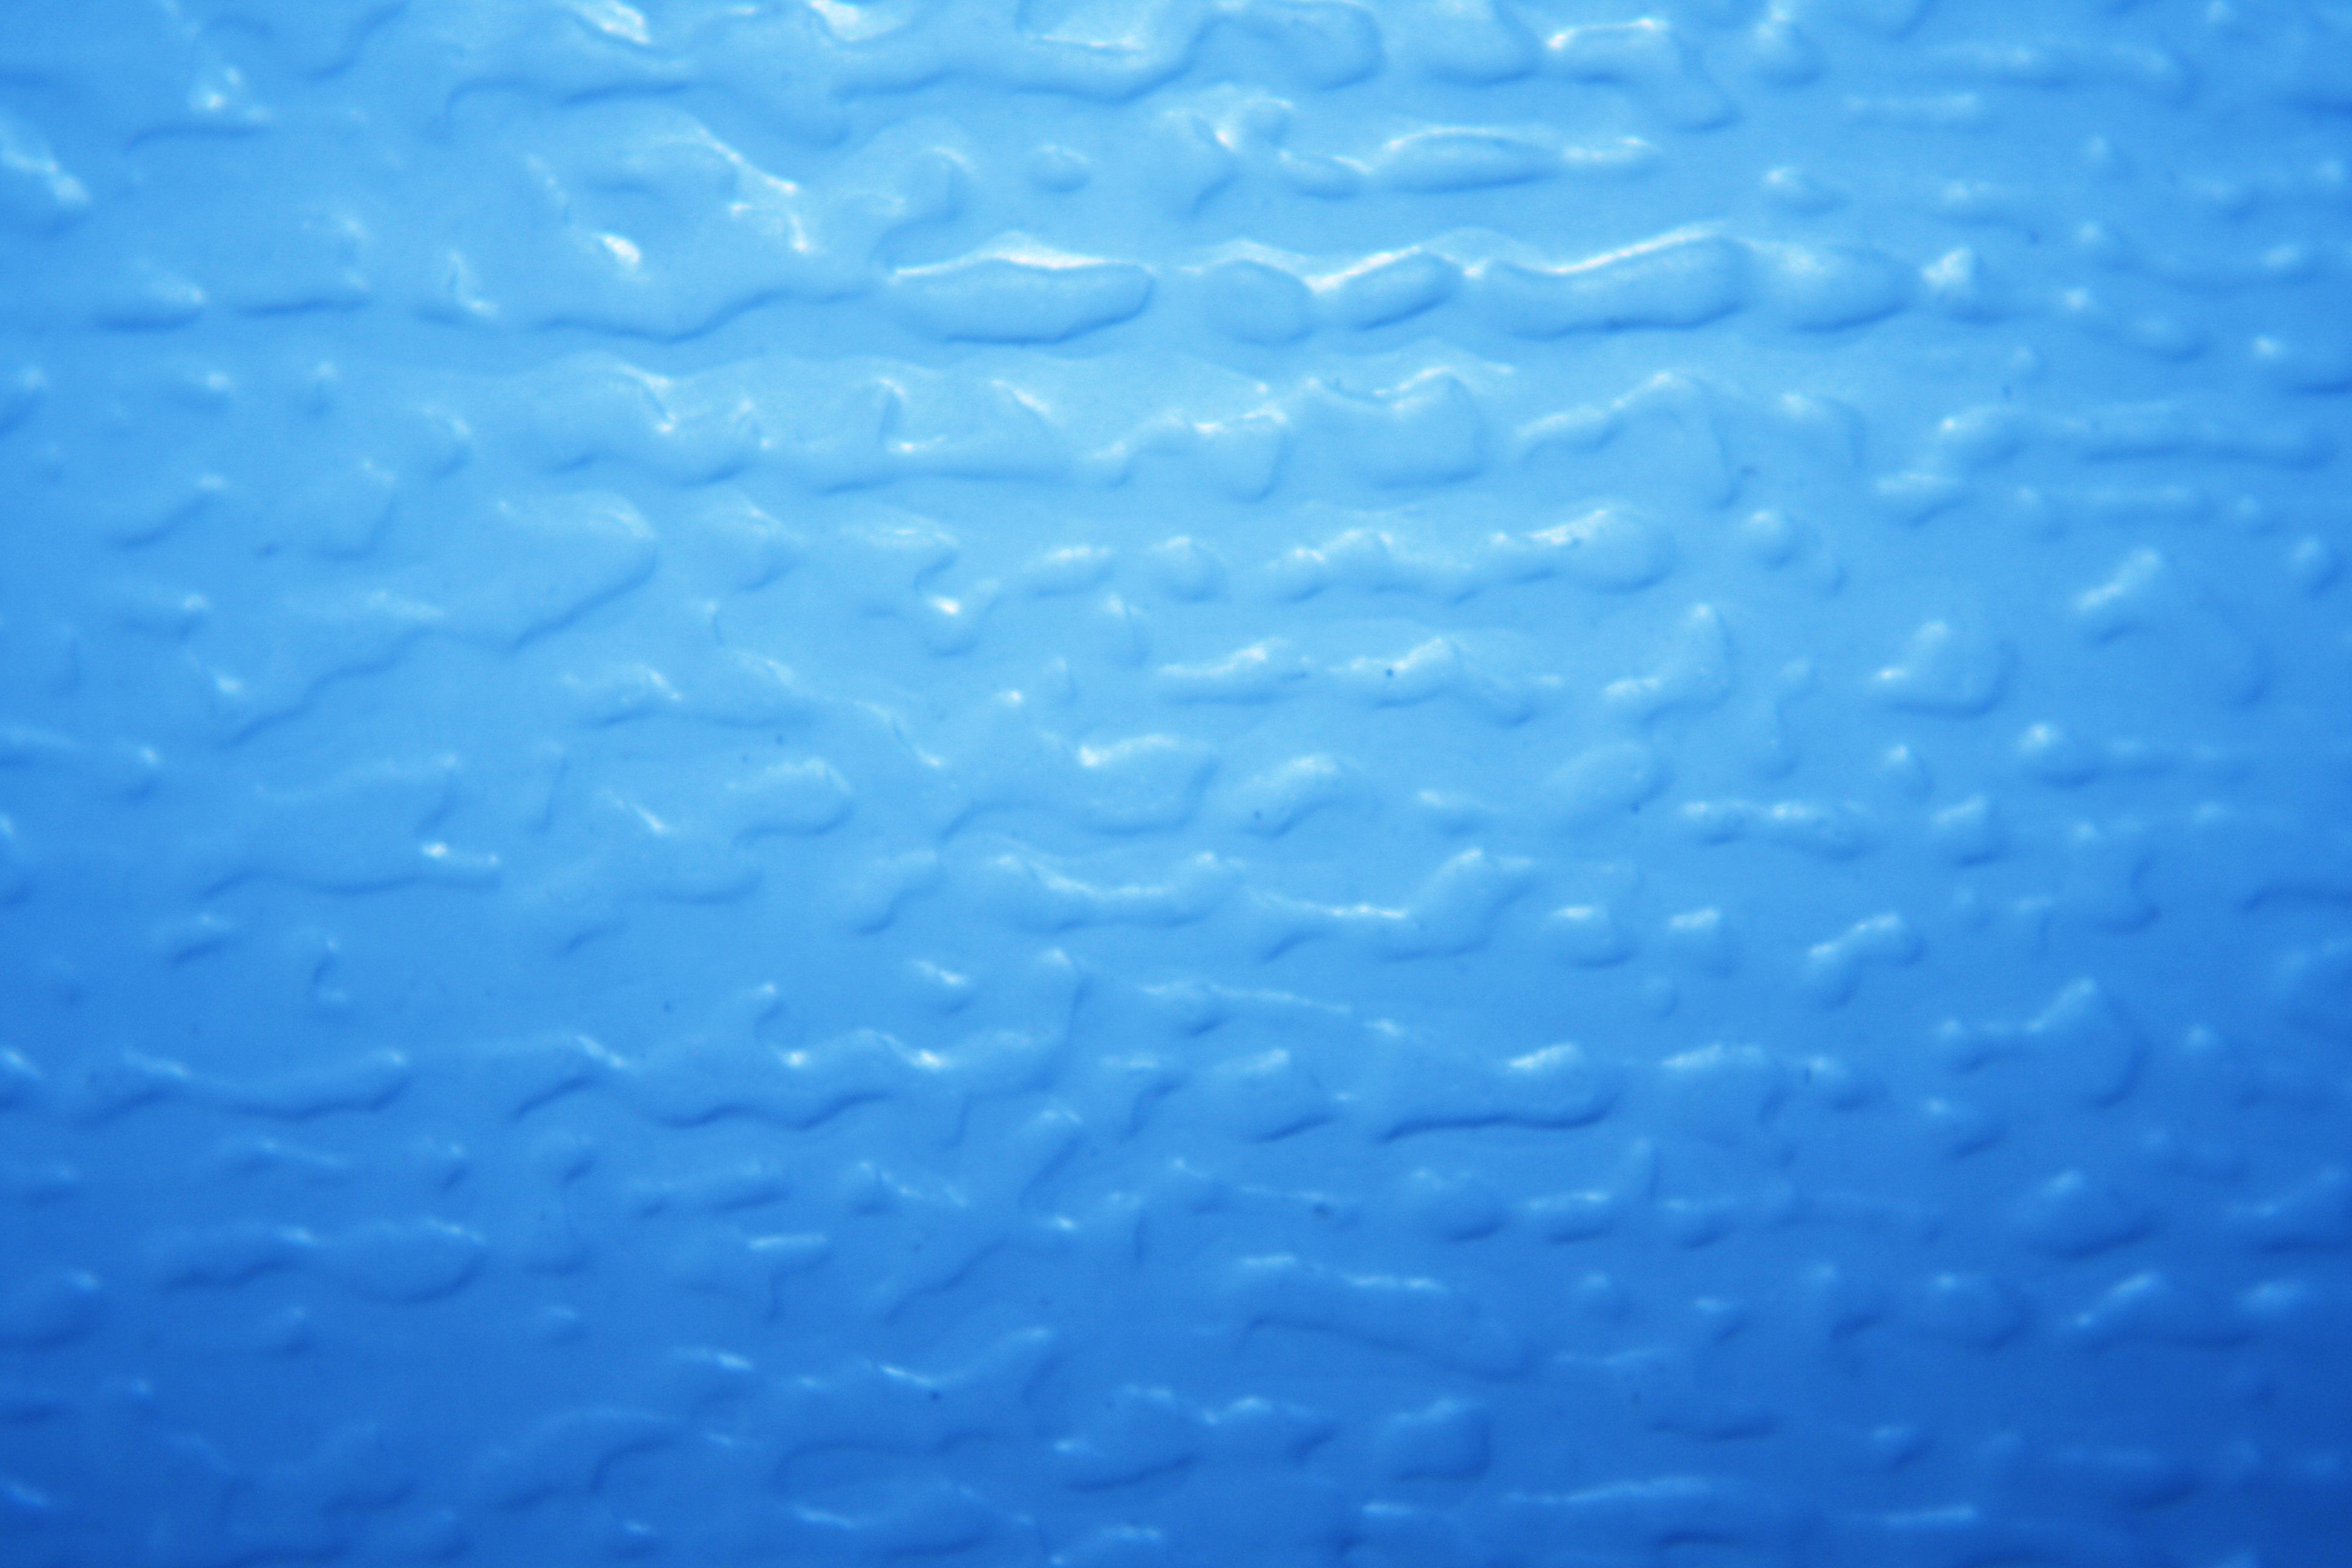 Light Blue Bumpy Plastic Texture Picture. Free Photograph. Photo Public Domain